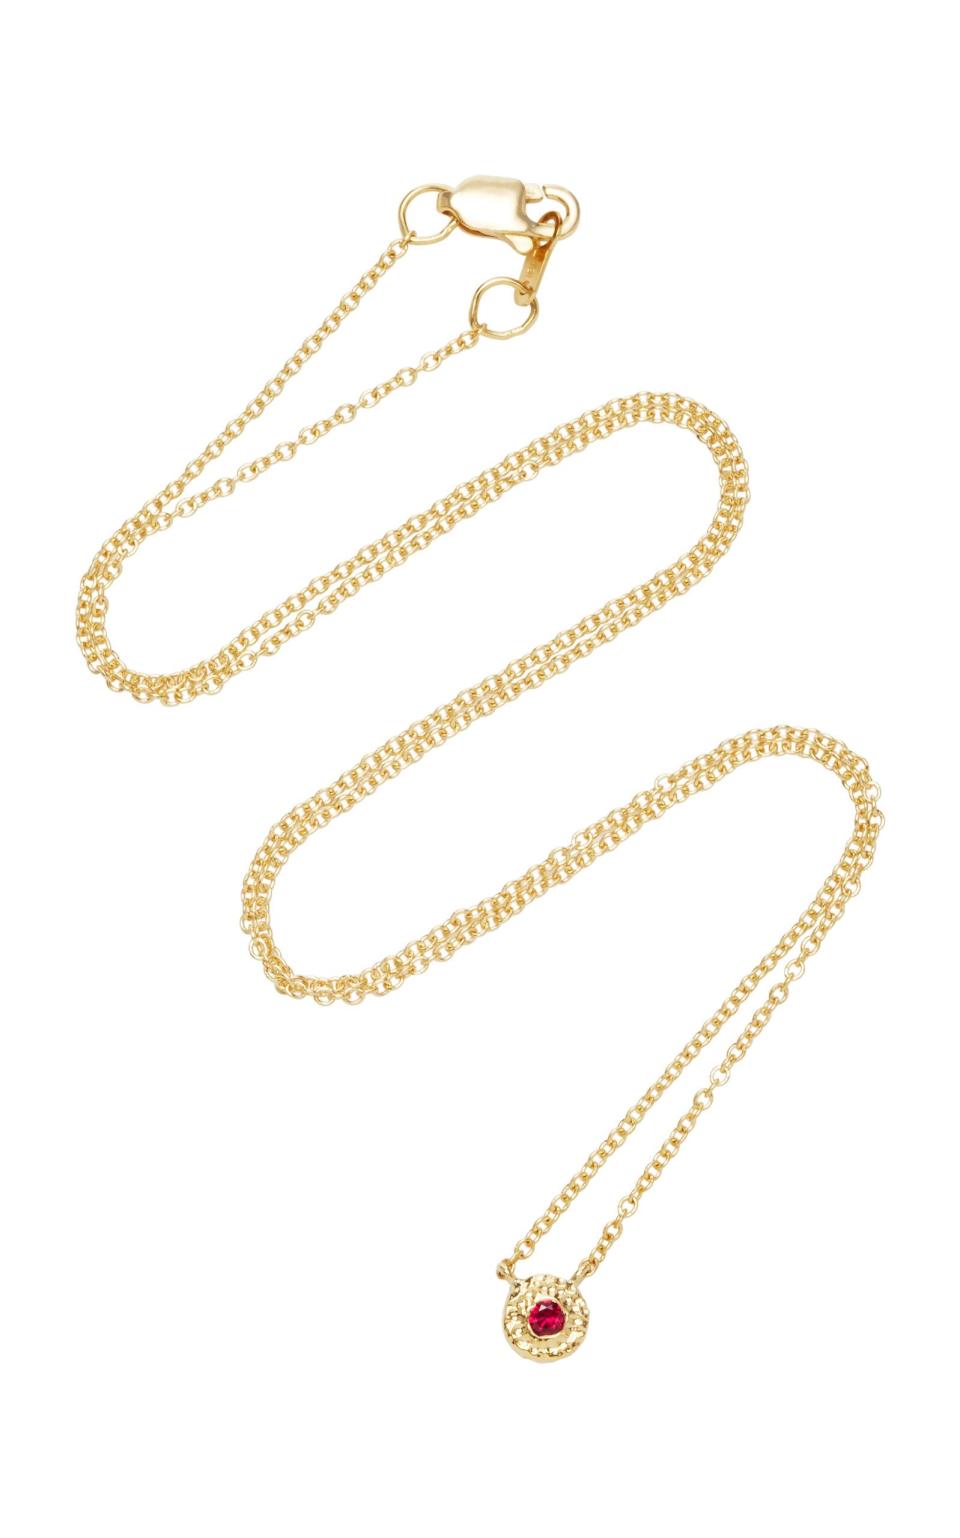 18K Gold Ruby Necklace by Octavia Elizabeth